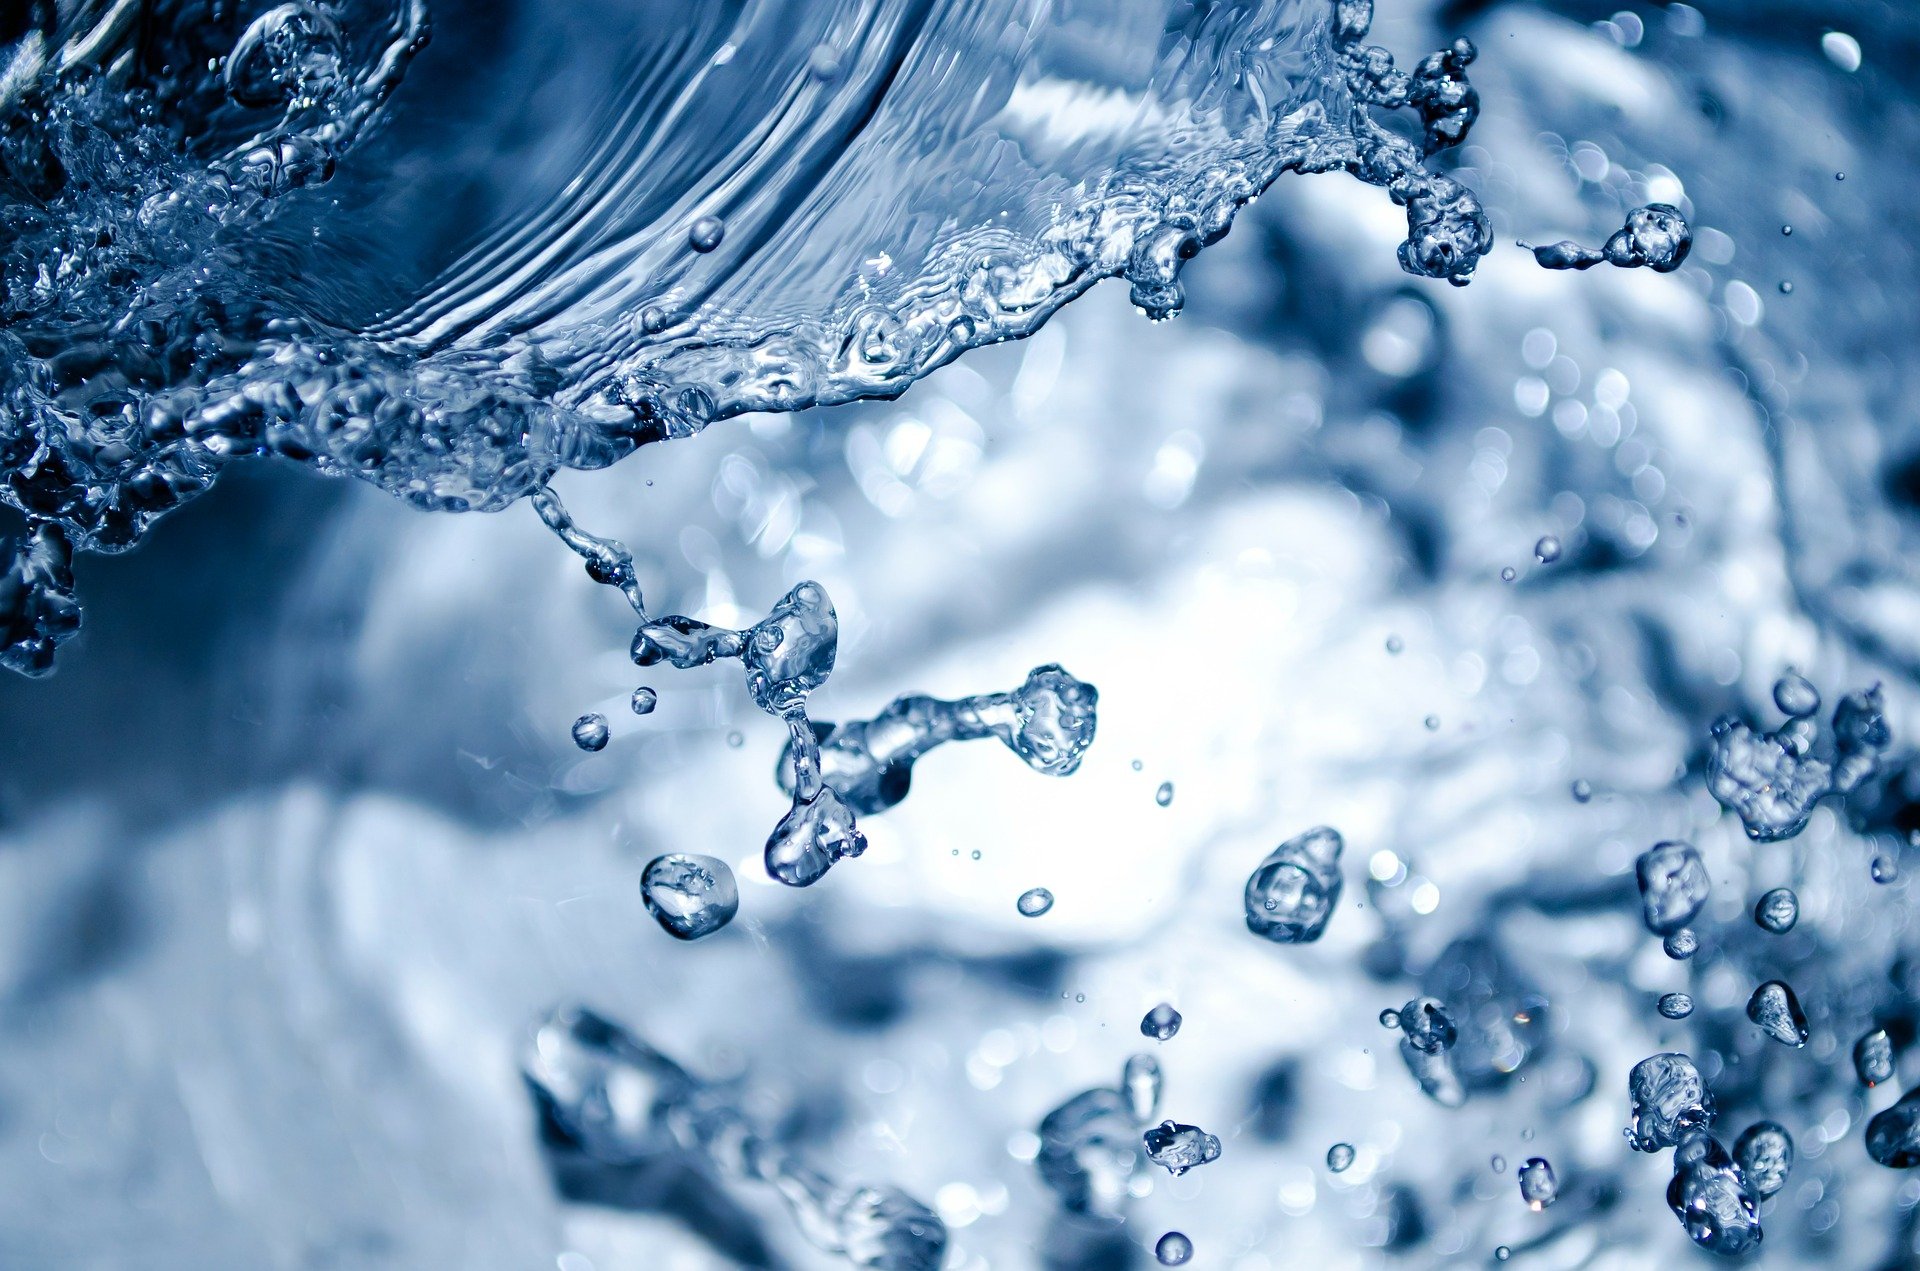 Bekanntmachung der Richtlinie zur Förderung von Forschungs- und Entwicklungsvorhaben zum Thema „Nachhaltige Grundwasserbewirtschaftung“ (LURCH) im Rahmen der Strategie „Forschung für Nachhaltigkeit (FONA)“